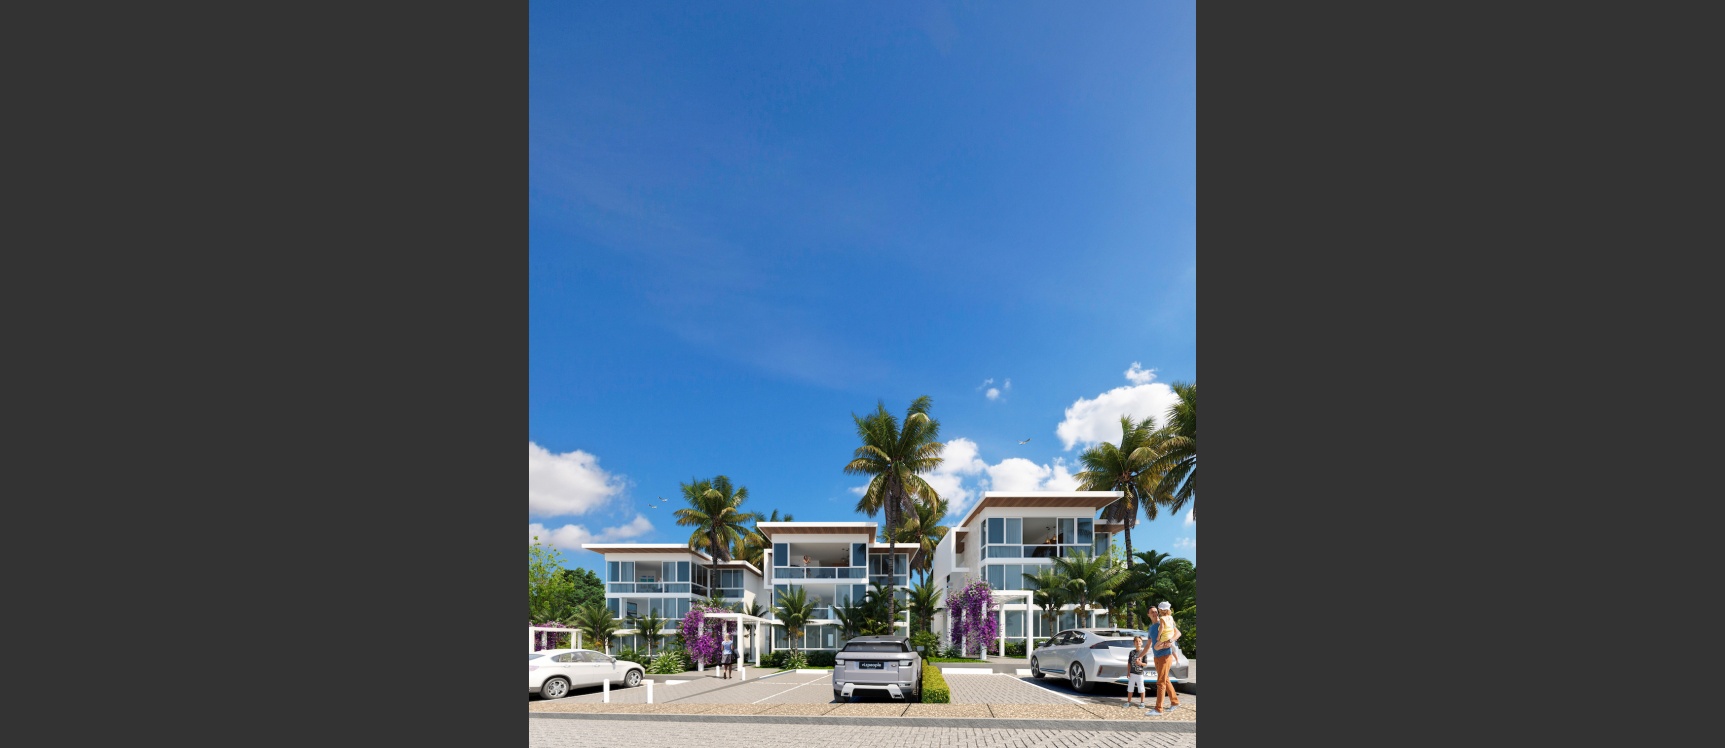 GeoBienes - Departamento 3 Dormitorios - Vista 3 - Planta Baja - Plusvalia Guayaquil Casas de venta y alquiler Inmobiliaria Ecuador